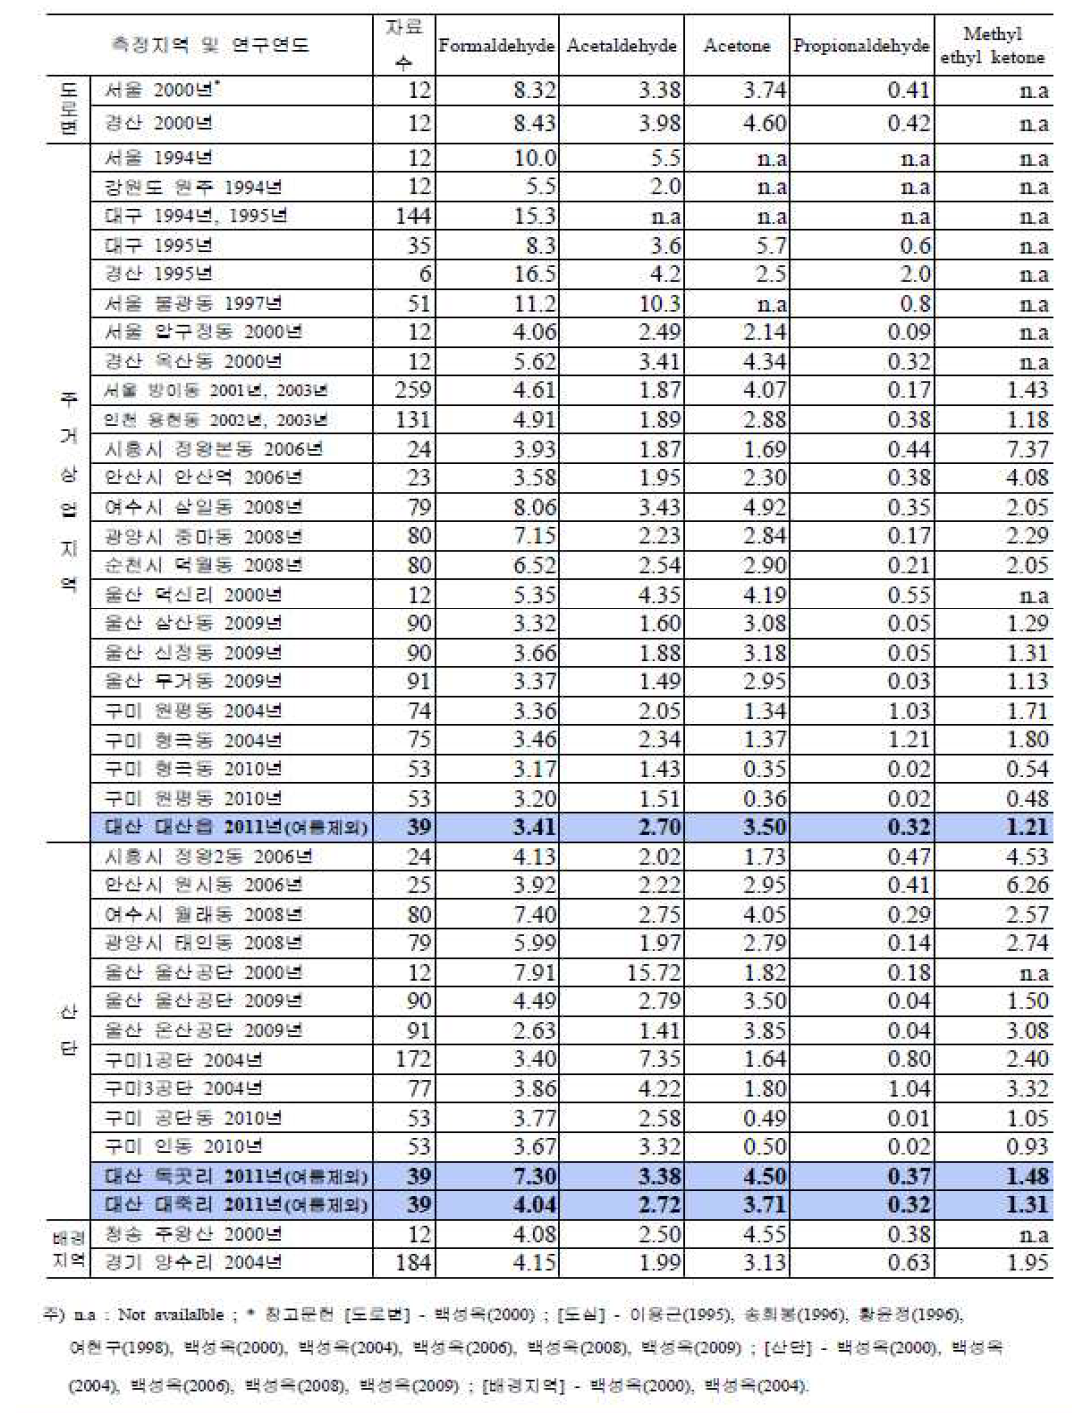 국내 타 지역과 대산지역 카보닐화합물 농도의 비교-연간자료(여름제외)